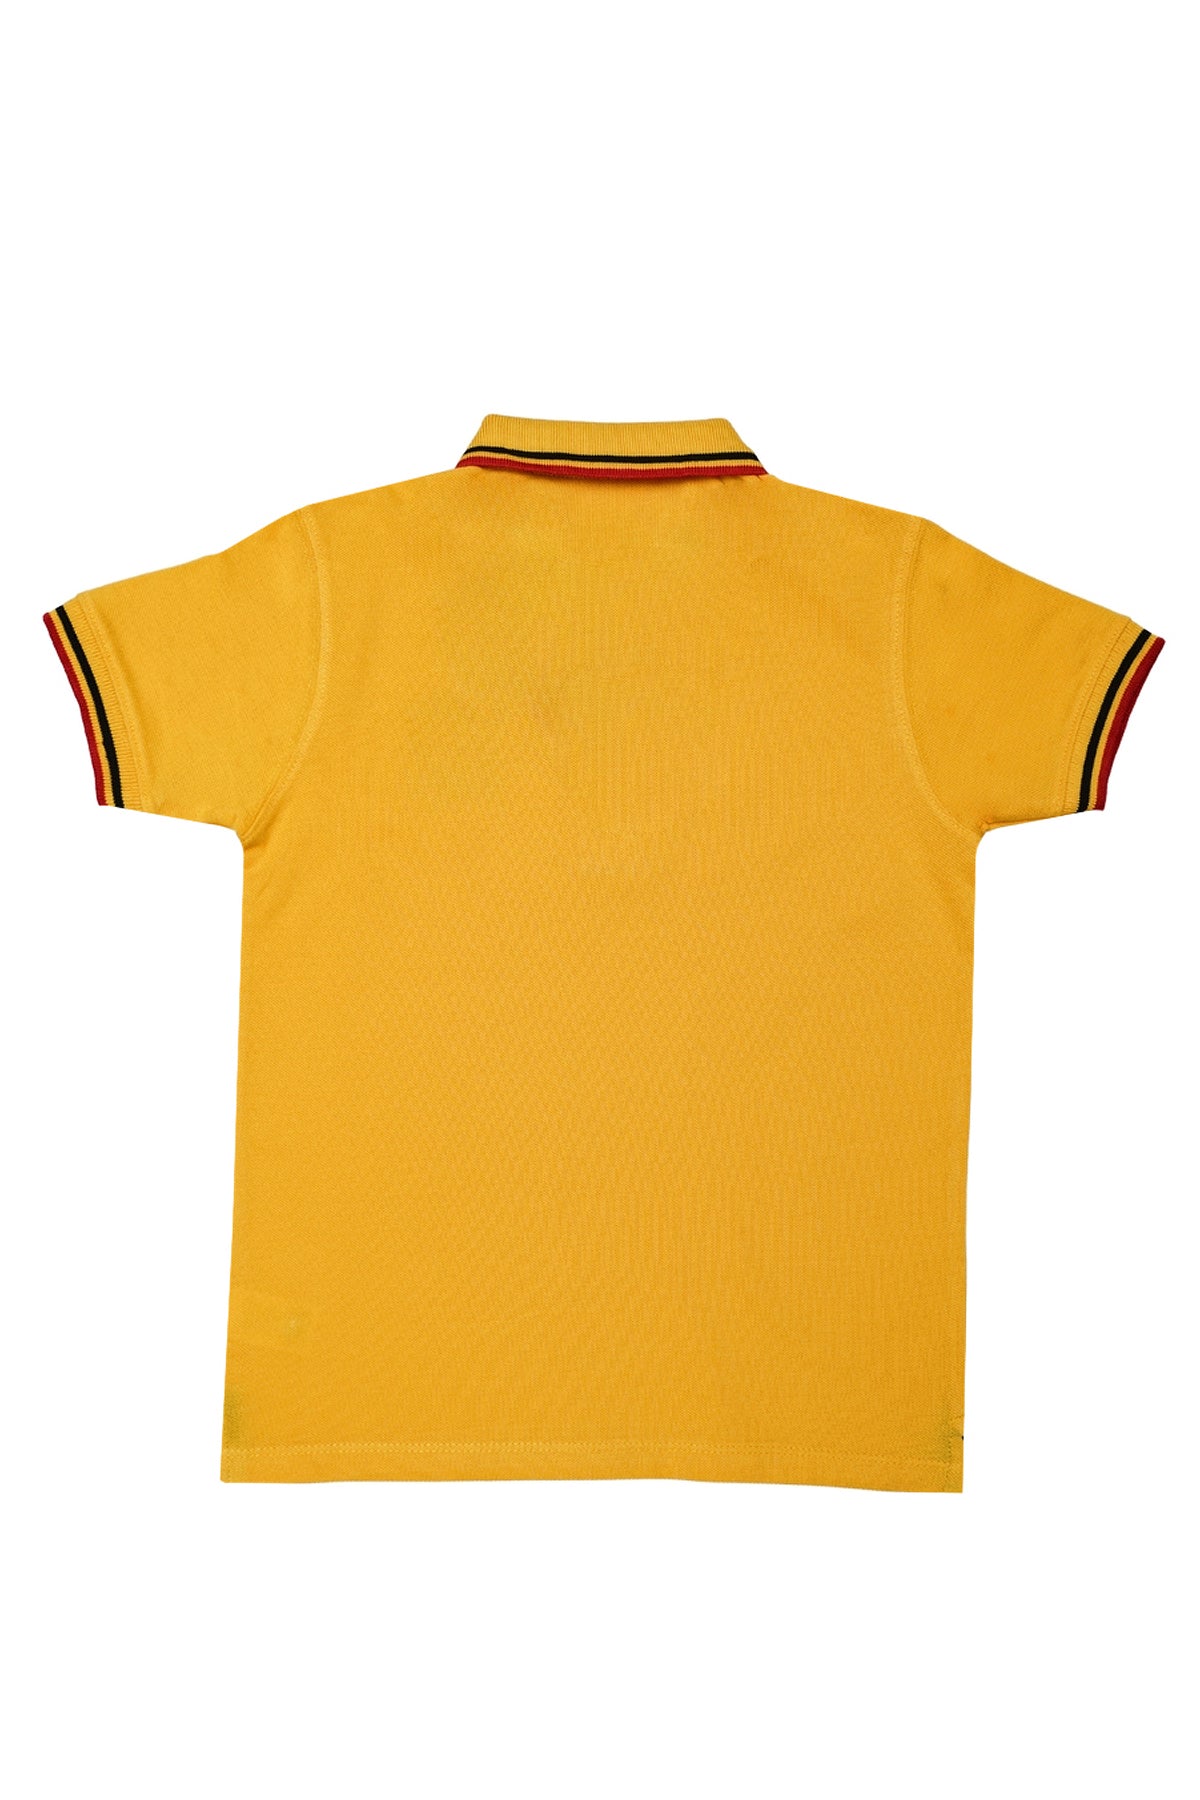 Polo T-Shirt (BPOLO-01)